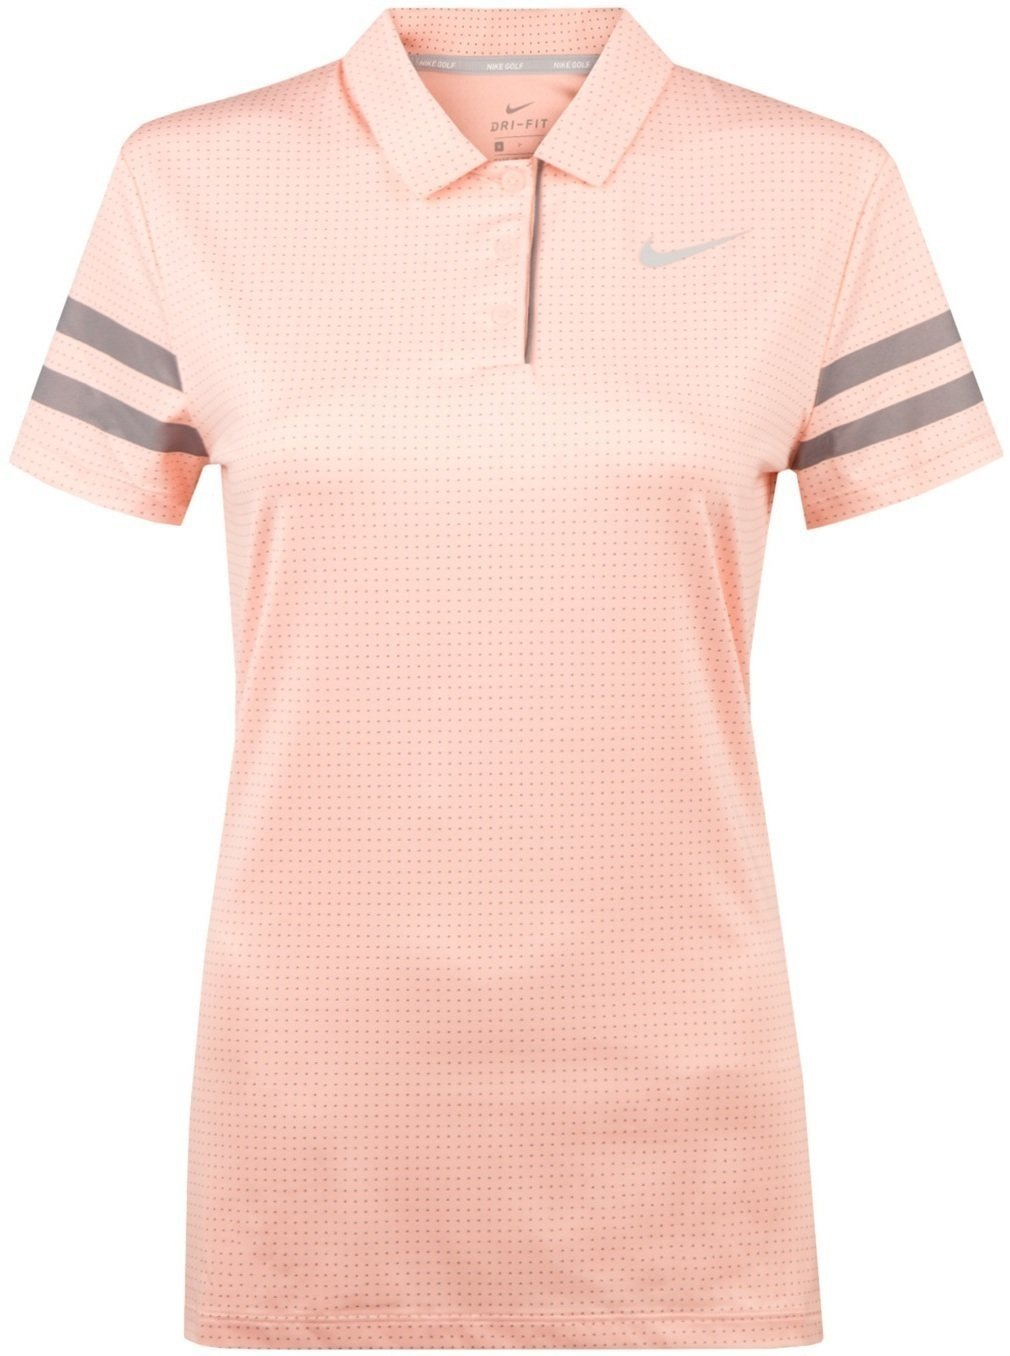 Πουκάμισα Πόλο Nike Dri-Fit Printed Womens Polo Storm Pink/Anthracite/White S